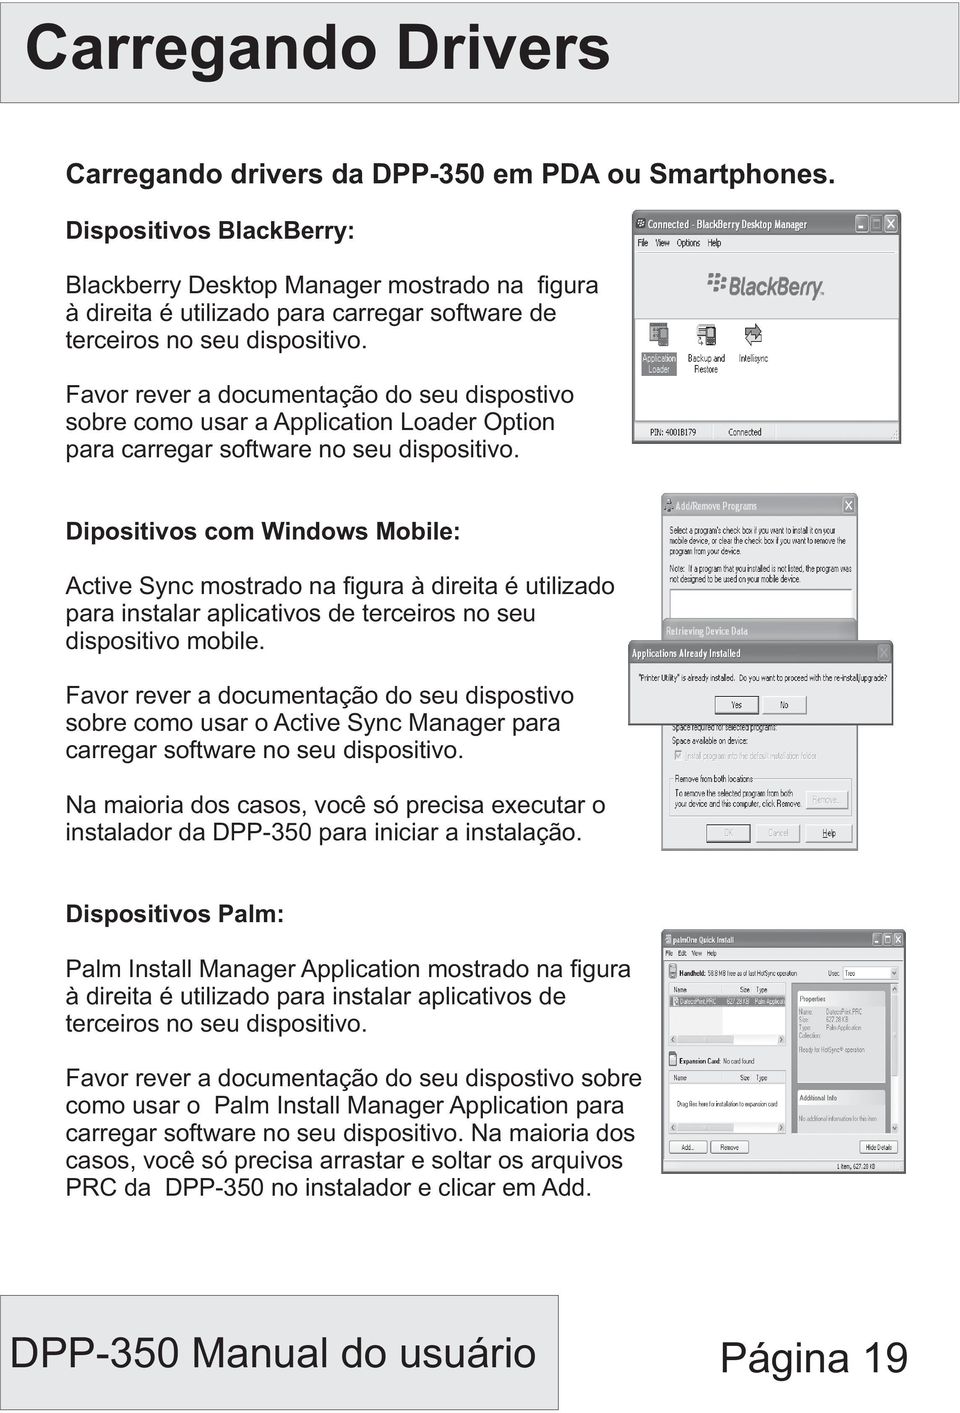 Favor rever a documentação do seu dispostivo sobre como usar a Application Loader Option para carregar software no seu dispositivo.